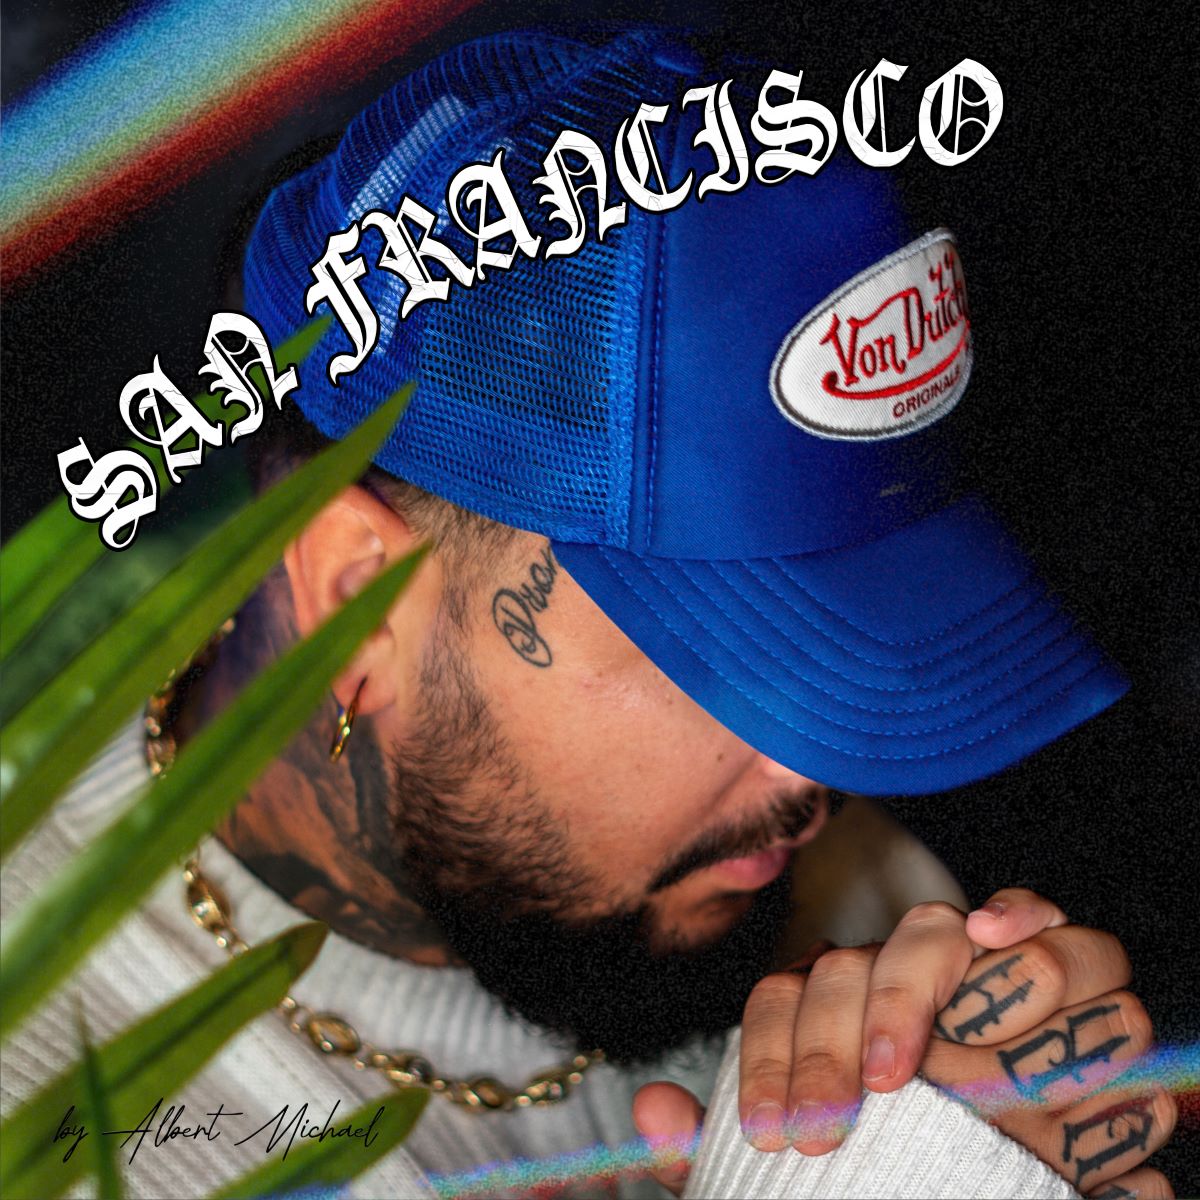 L’artista urban 6:AM con il suo nuovo singolo “San Francisco”